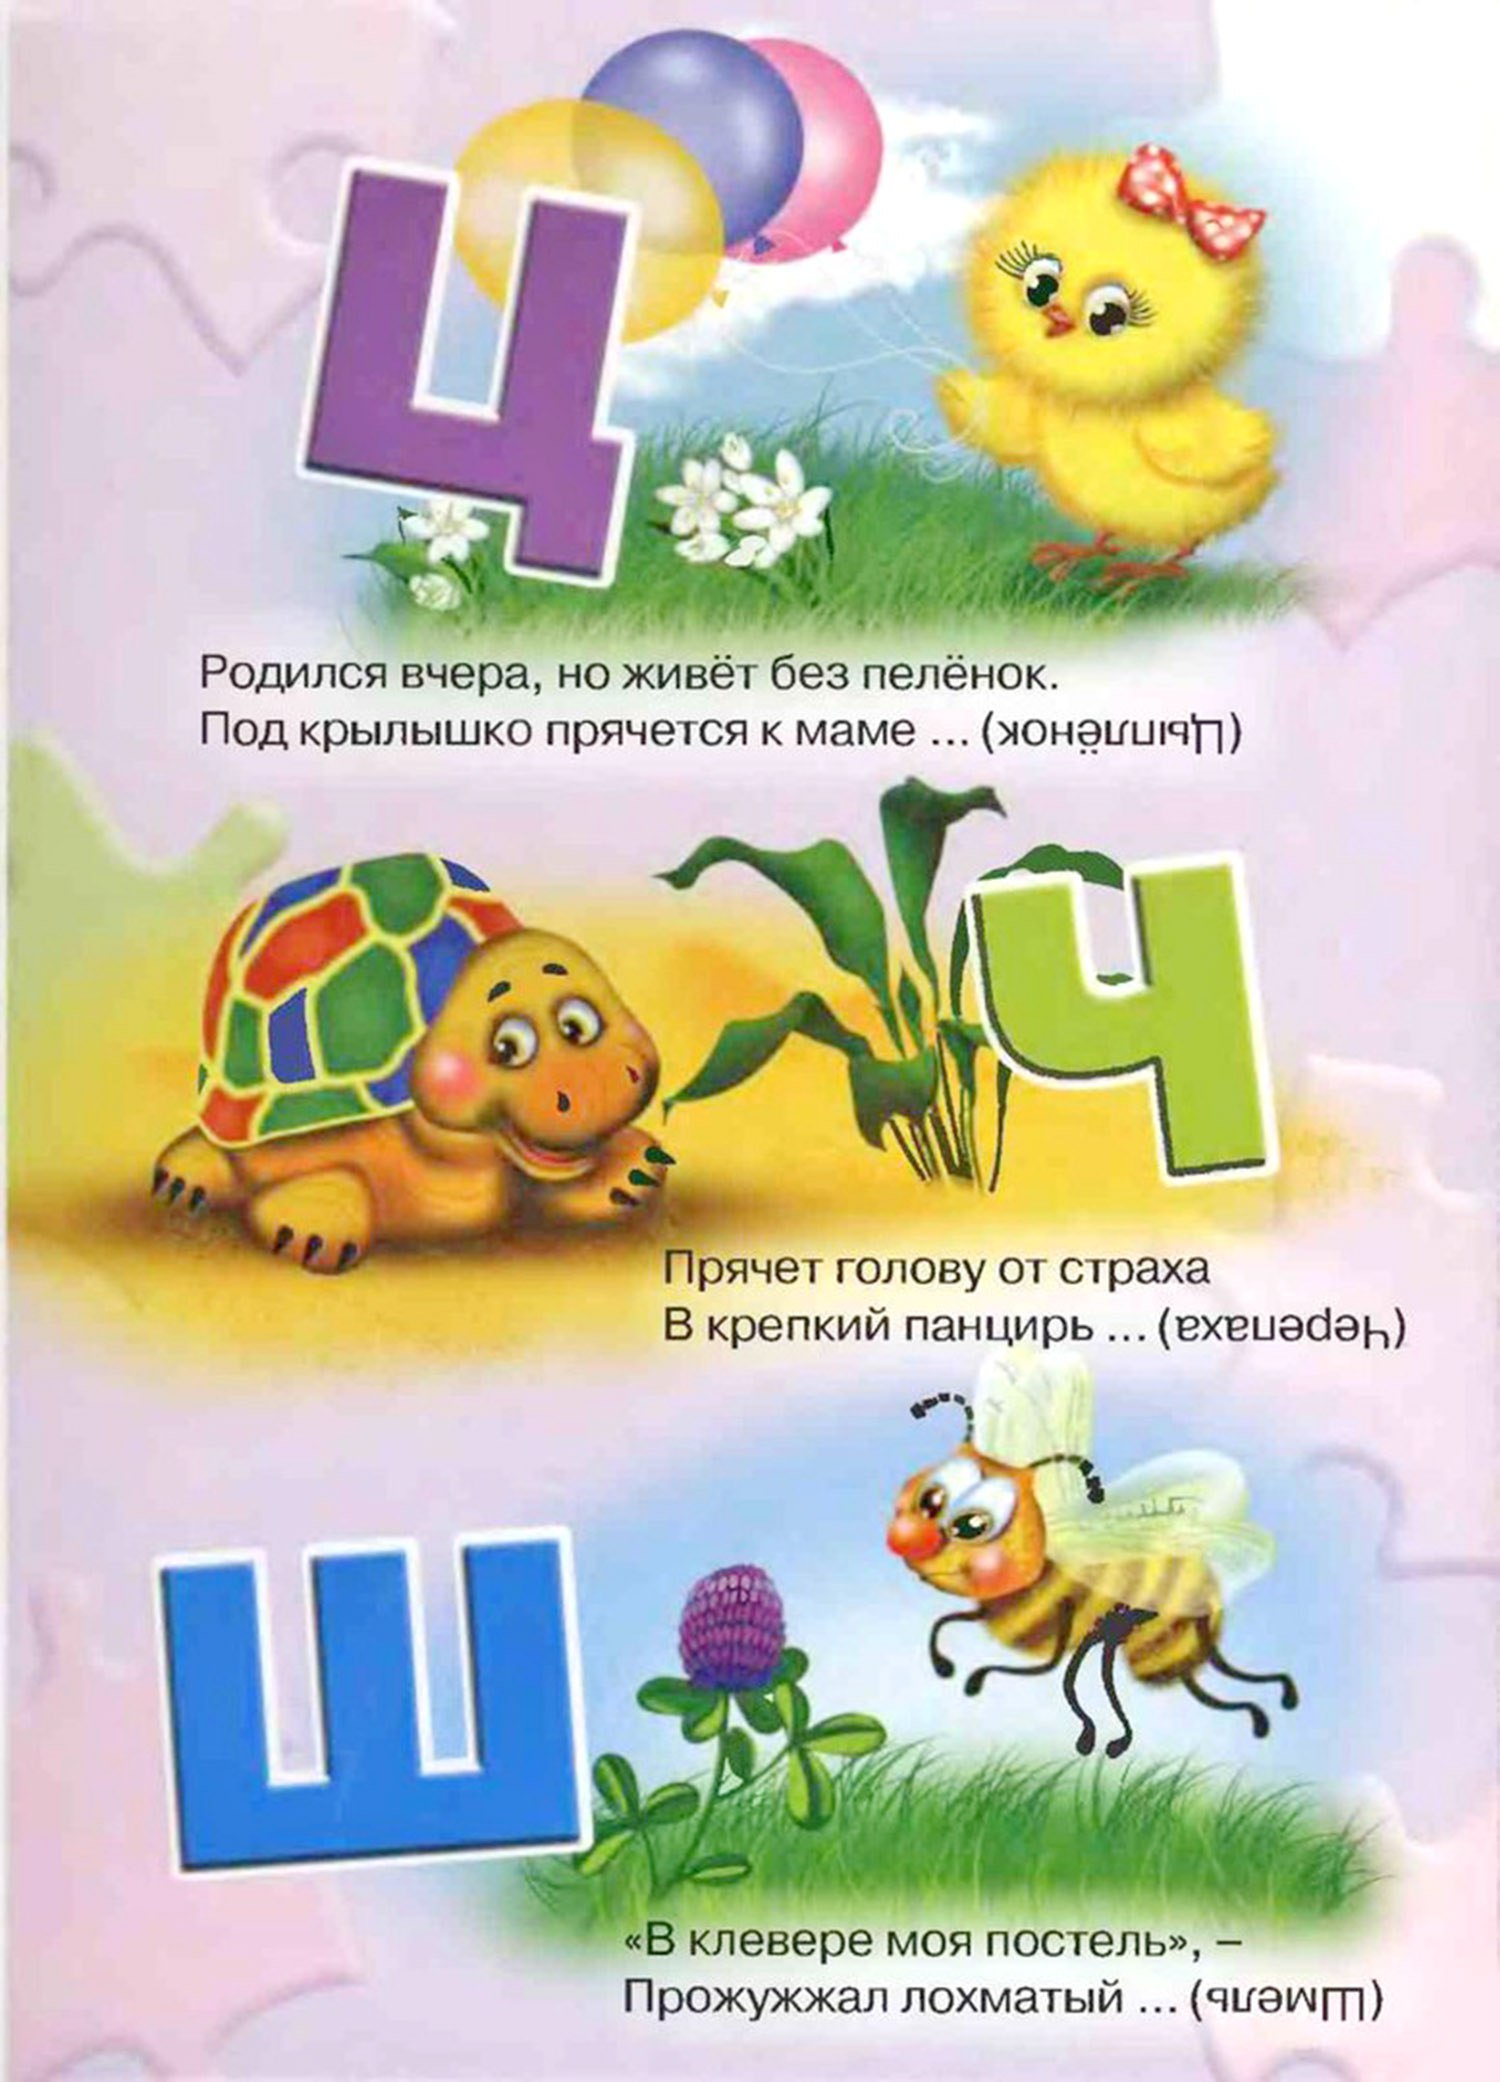 Загадки про букву Е — изучаем русский алфавит